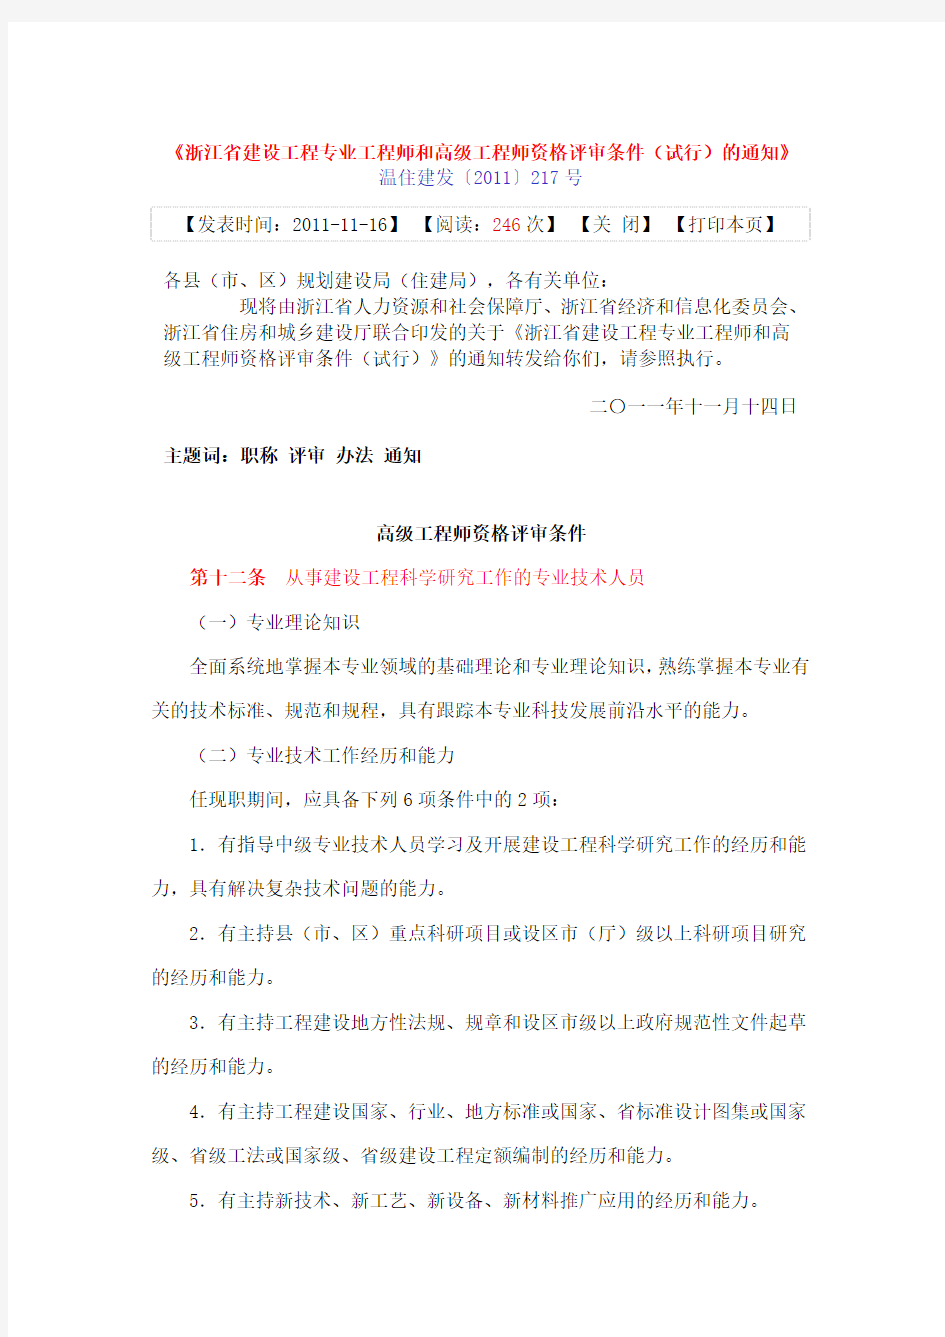 浙江省建设工程专业高级工程师资格评审条件